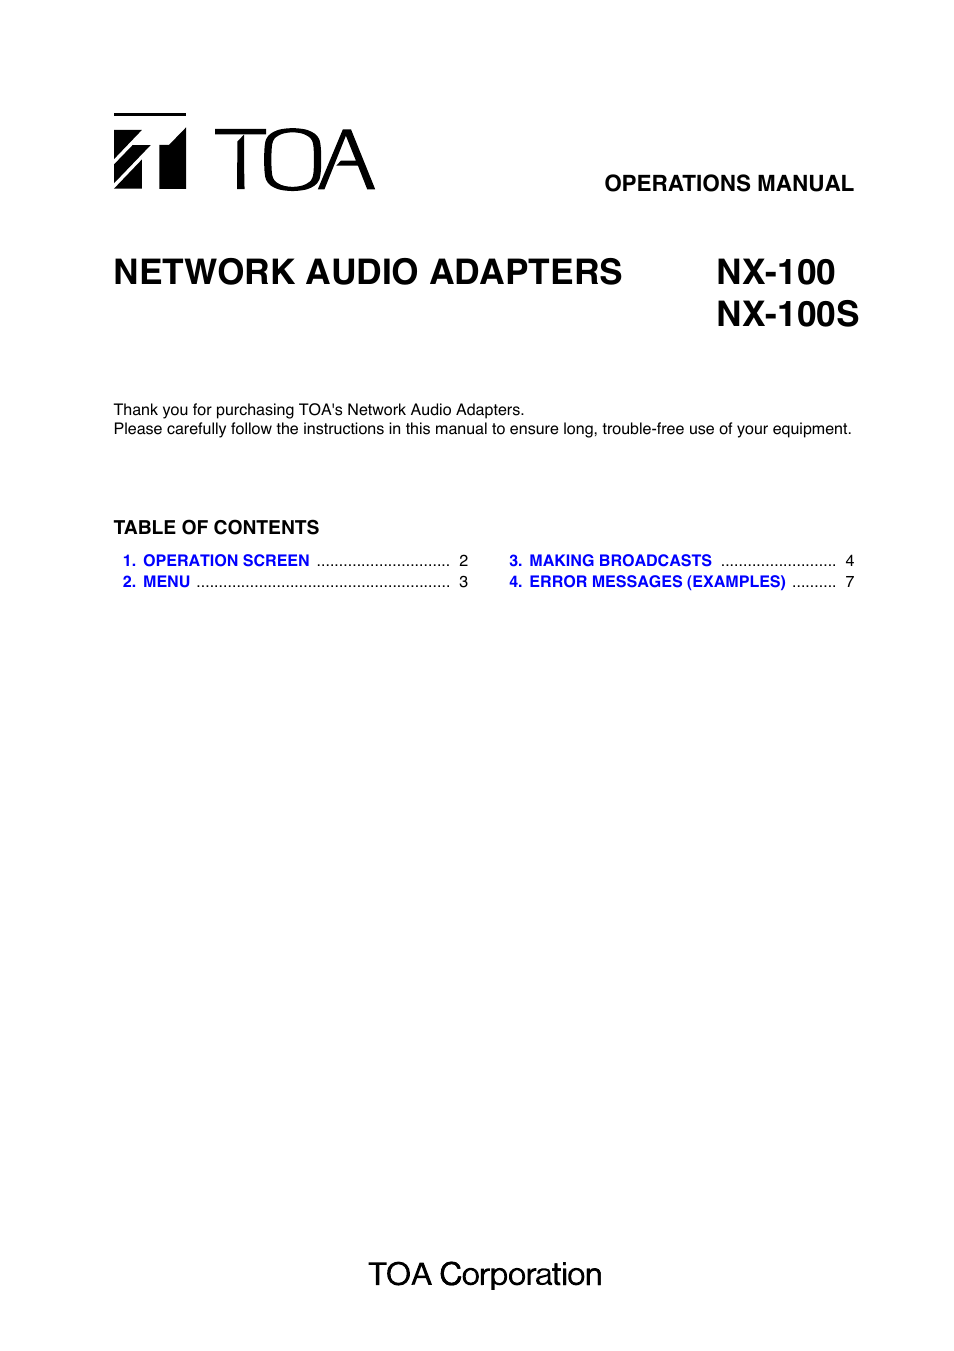 NX-100 Manual